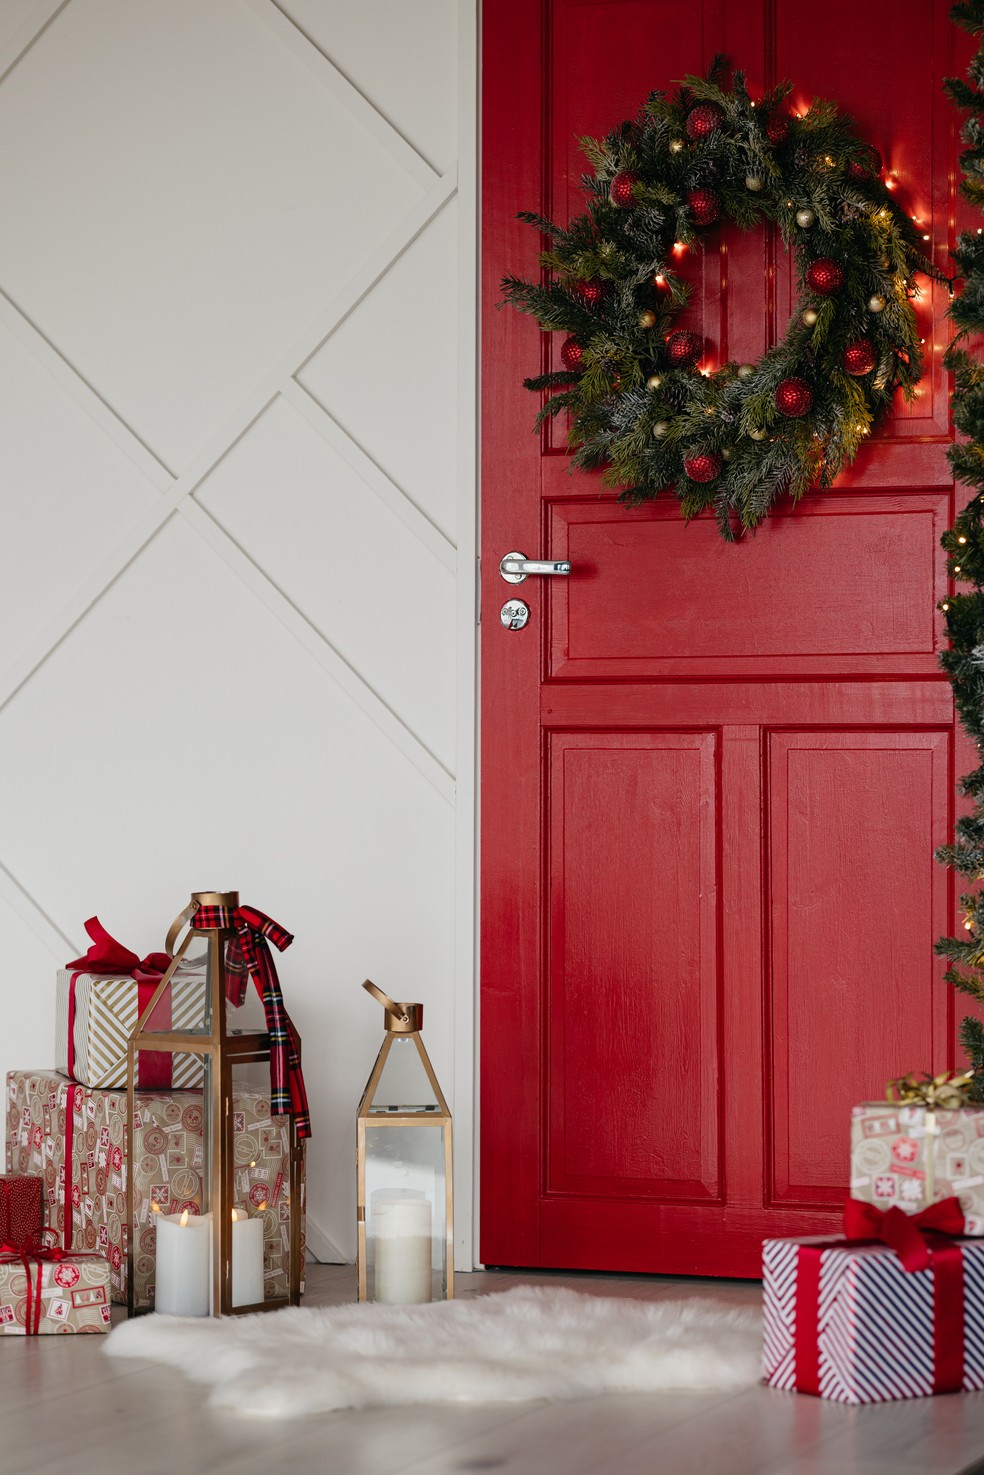 Guirlanda são tradicionais para a decoração natalina e servem como um décor de boas-vindas — Foto: Pexels